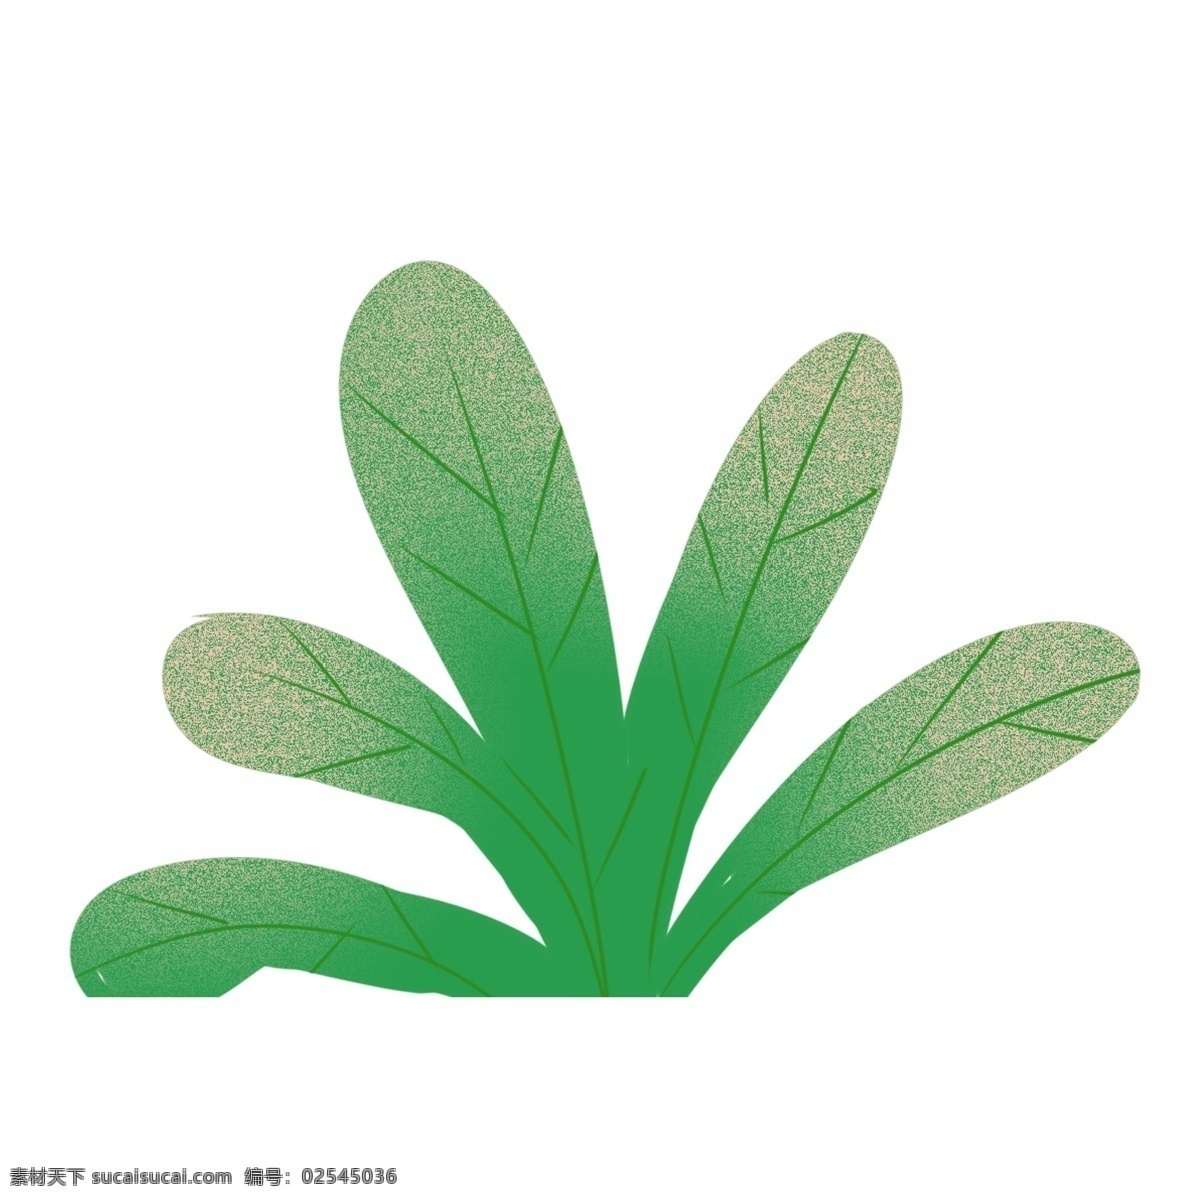 小 清新 绿叶 植物 插画 绿色 树叶 卡通 彩色 水彩 创意 手绘 绘画元素 现代 简约 装饰 图案